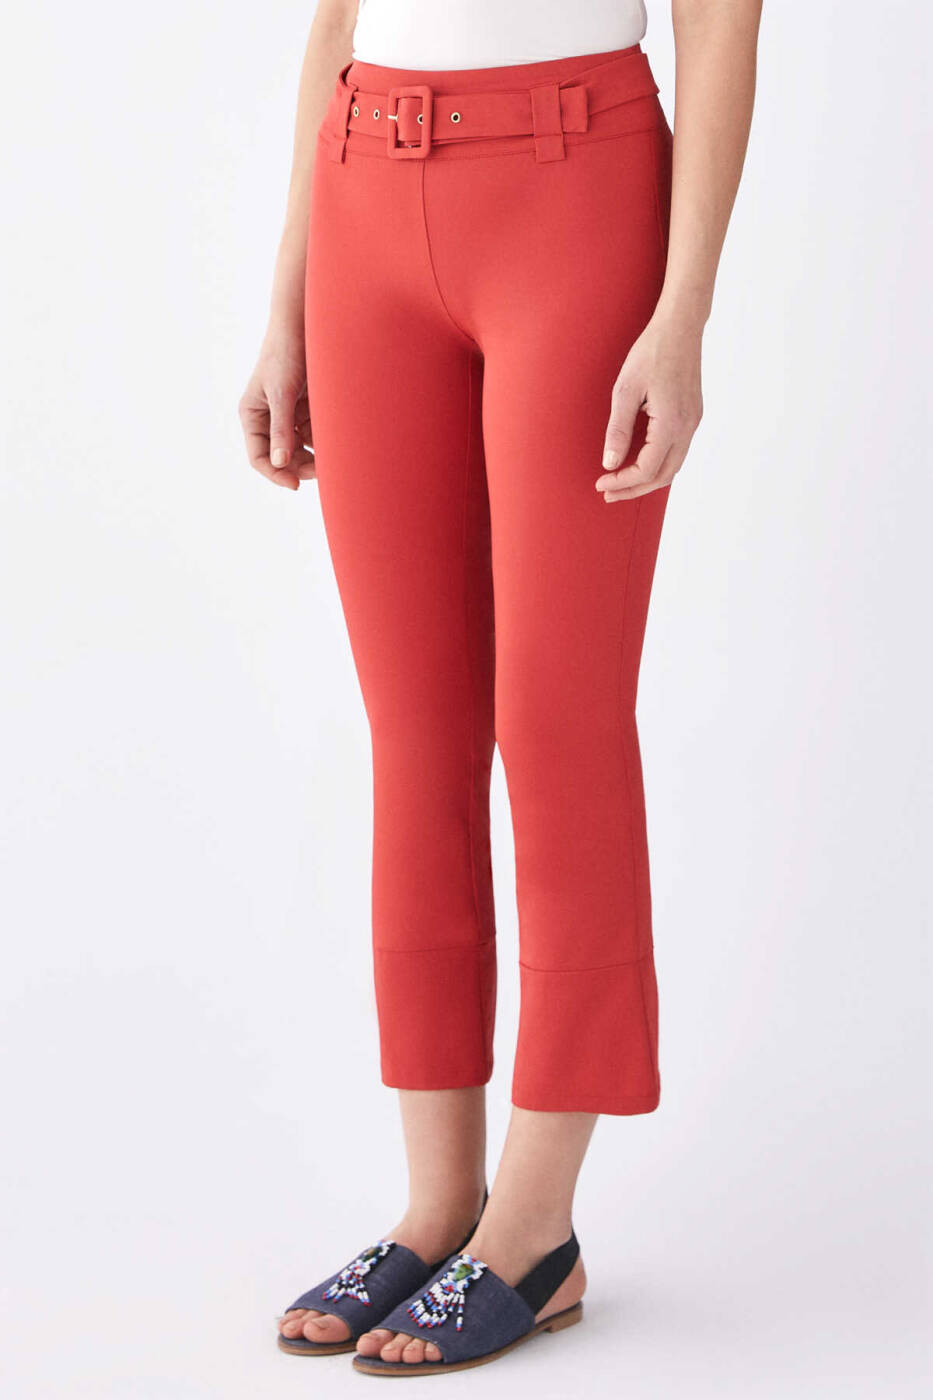  Kemer Detaylı Kadın Pantolon Kırmızı - 3